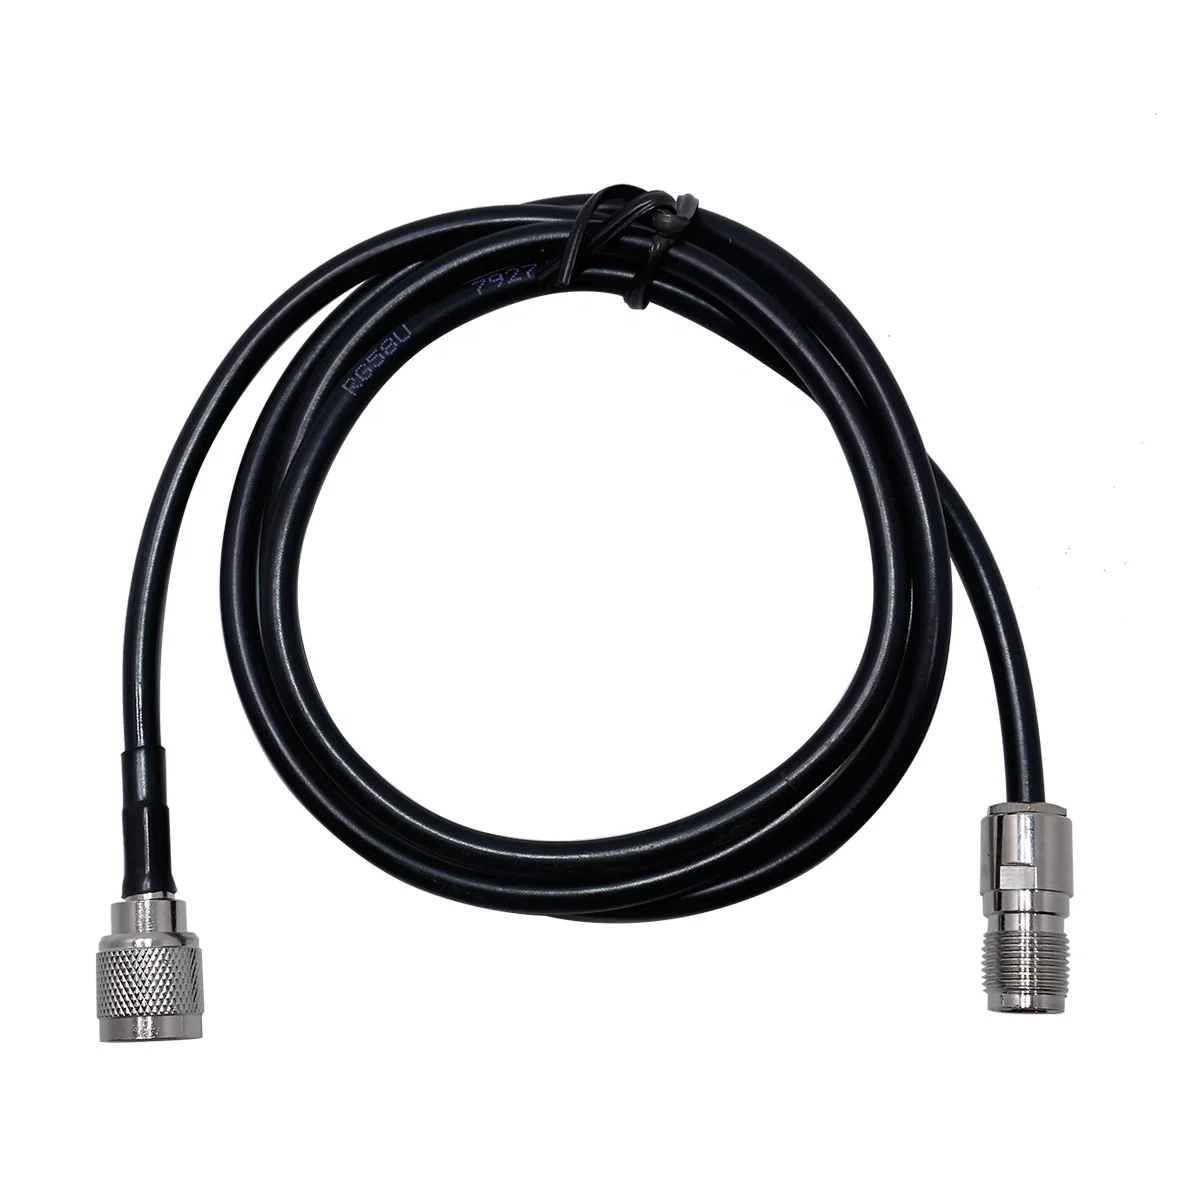 Cable de extensión de Antena con TNC Macho a TNC Hembra Compatible con Tri PRC-152 TS PRC-148 Tri PRC148 United Start PRC-148 TCA PRC-152A. 